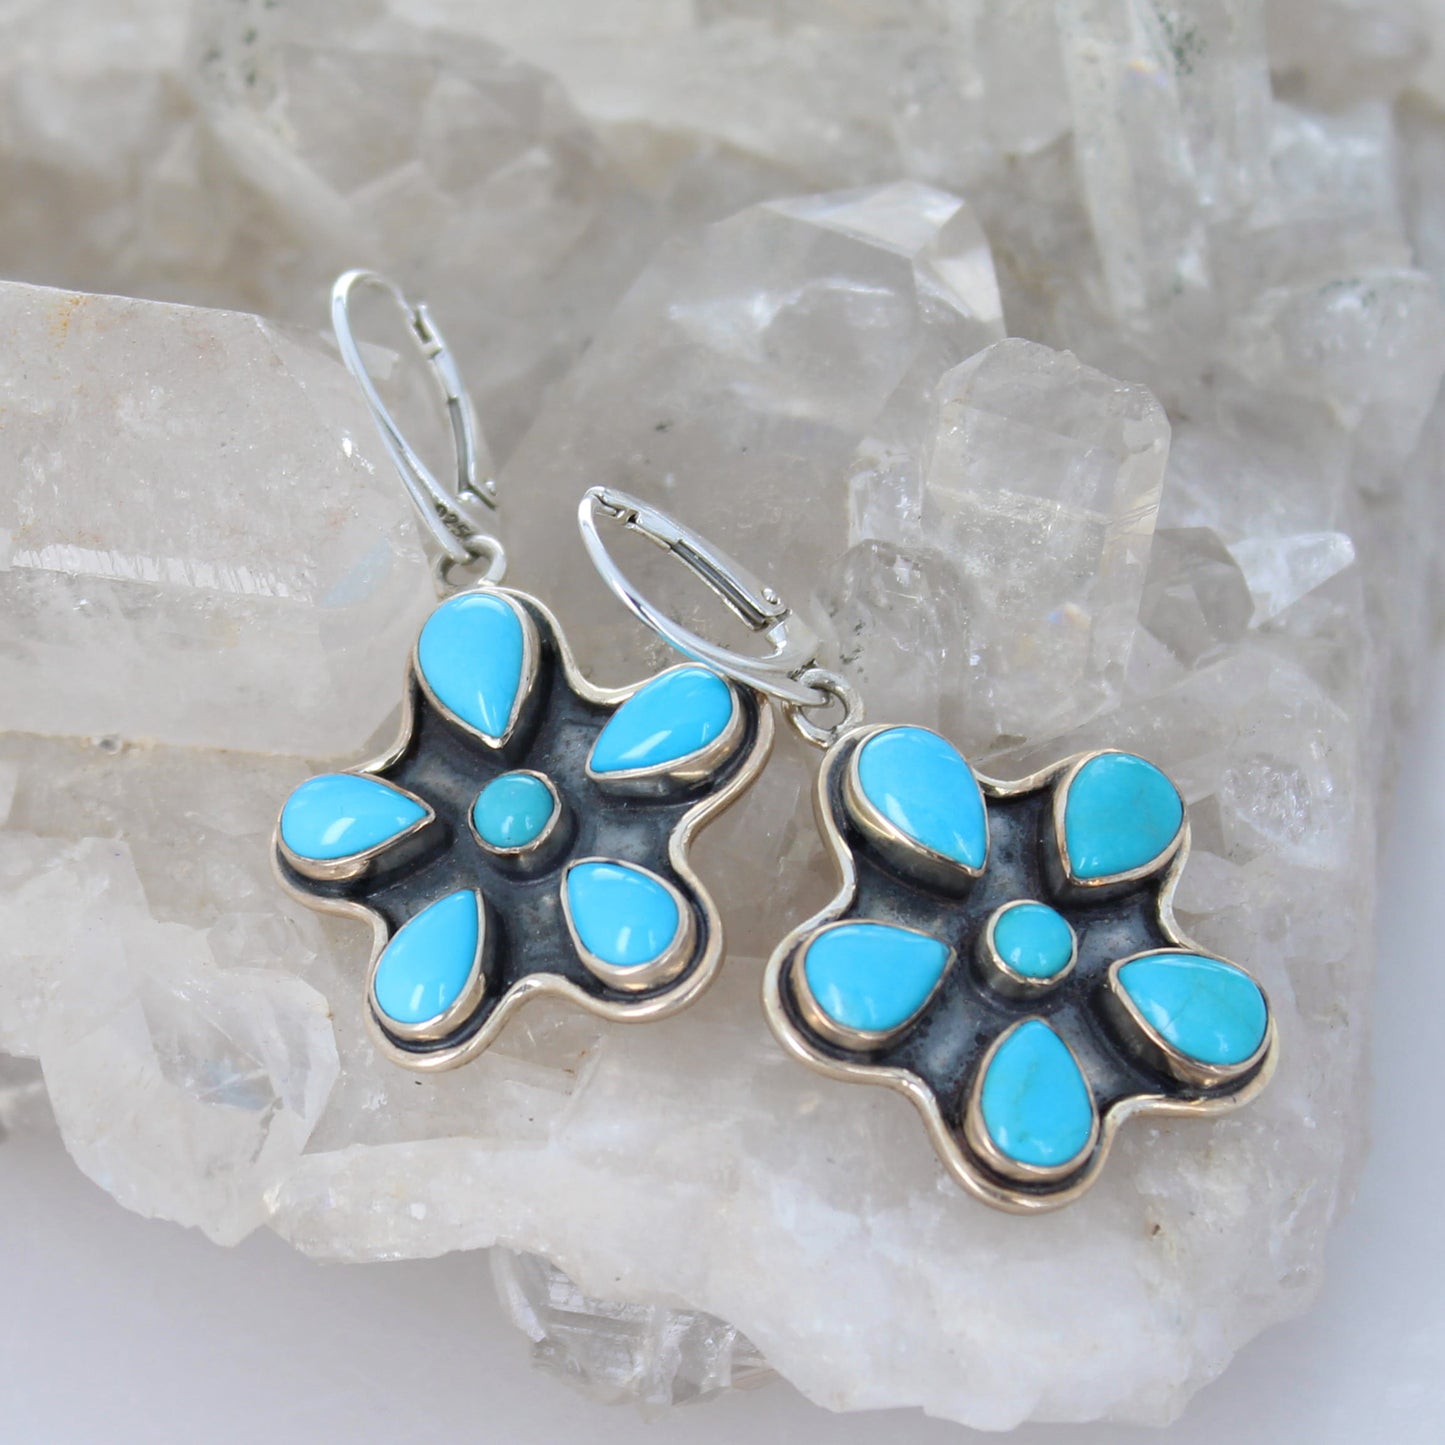 Beautiful Sleeping Beauty Turquoise Flower Design Earrings Sterling